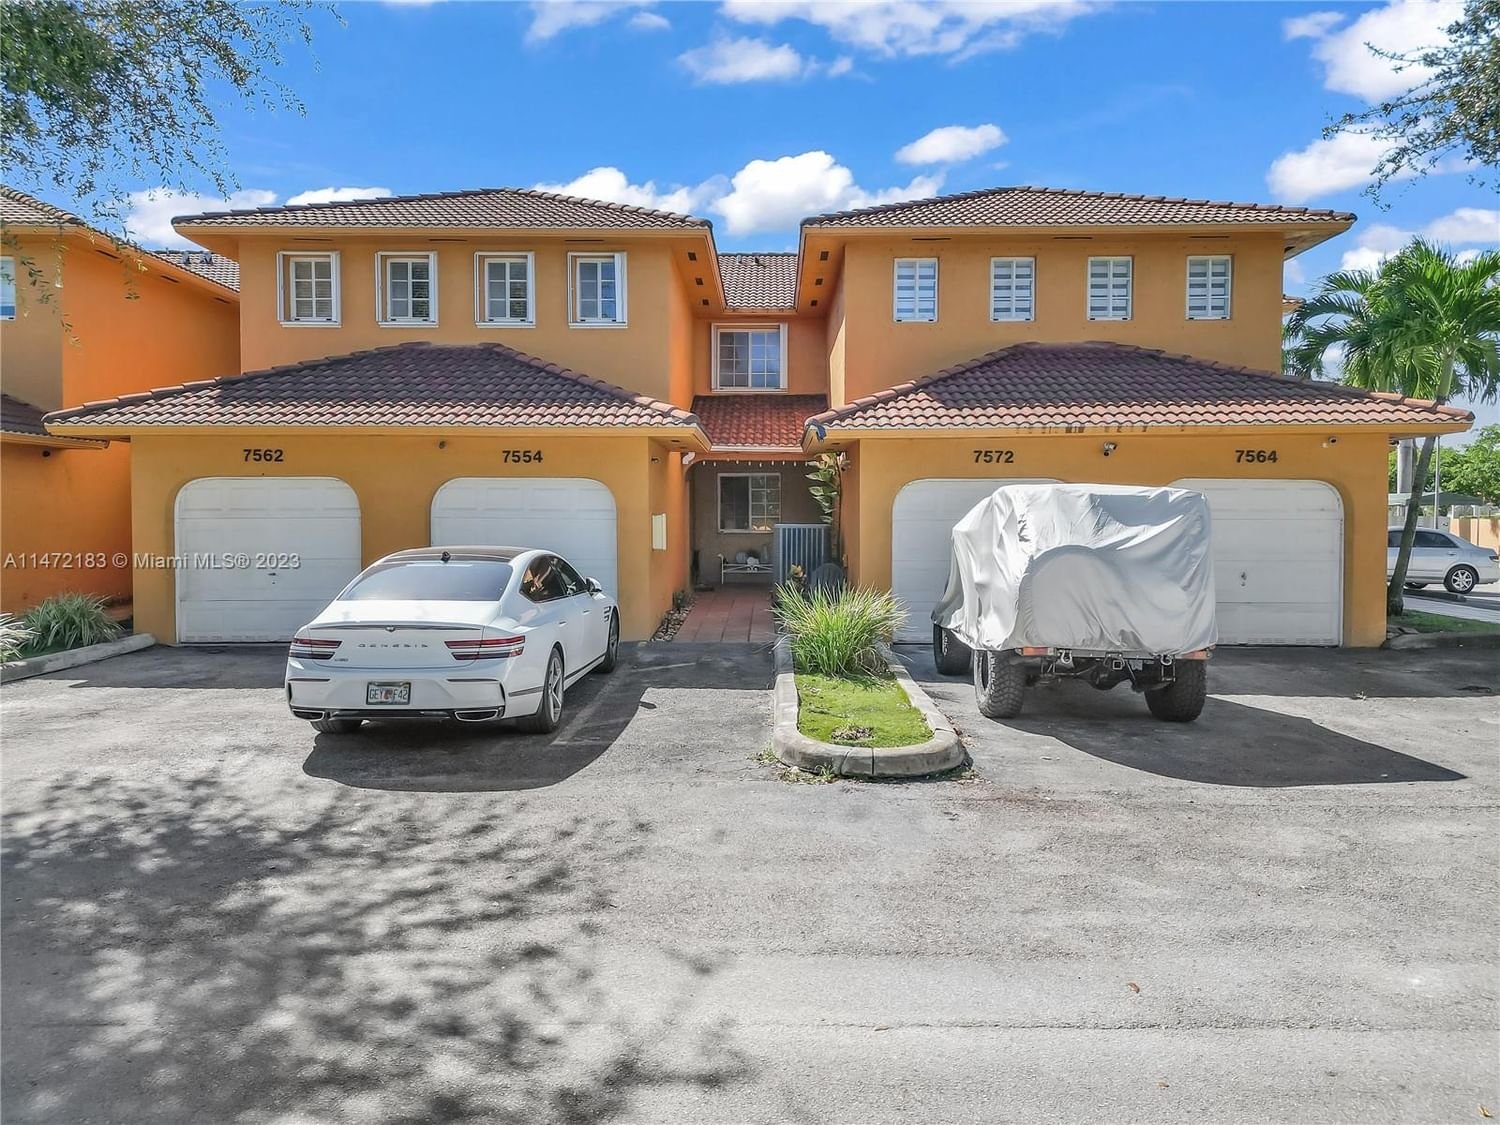 Real estate property located at 7572 177th St #7572, Miami-Dade County, LILANDIA ESTATES CONDO, Hialeah, FL